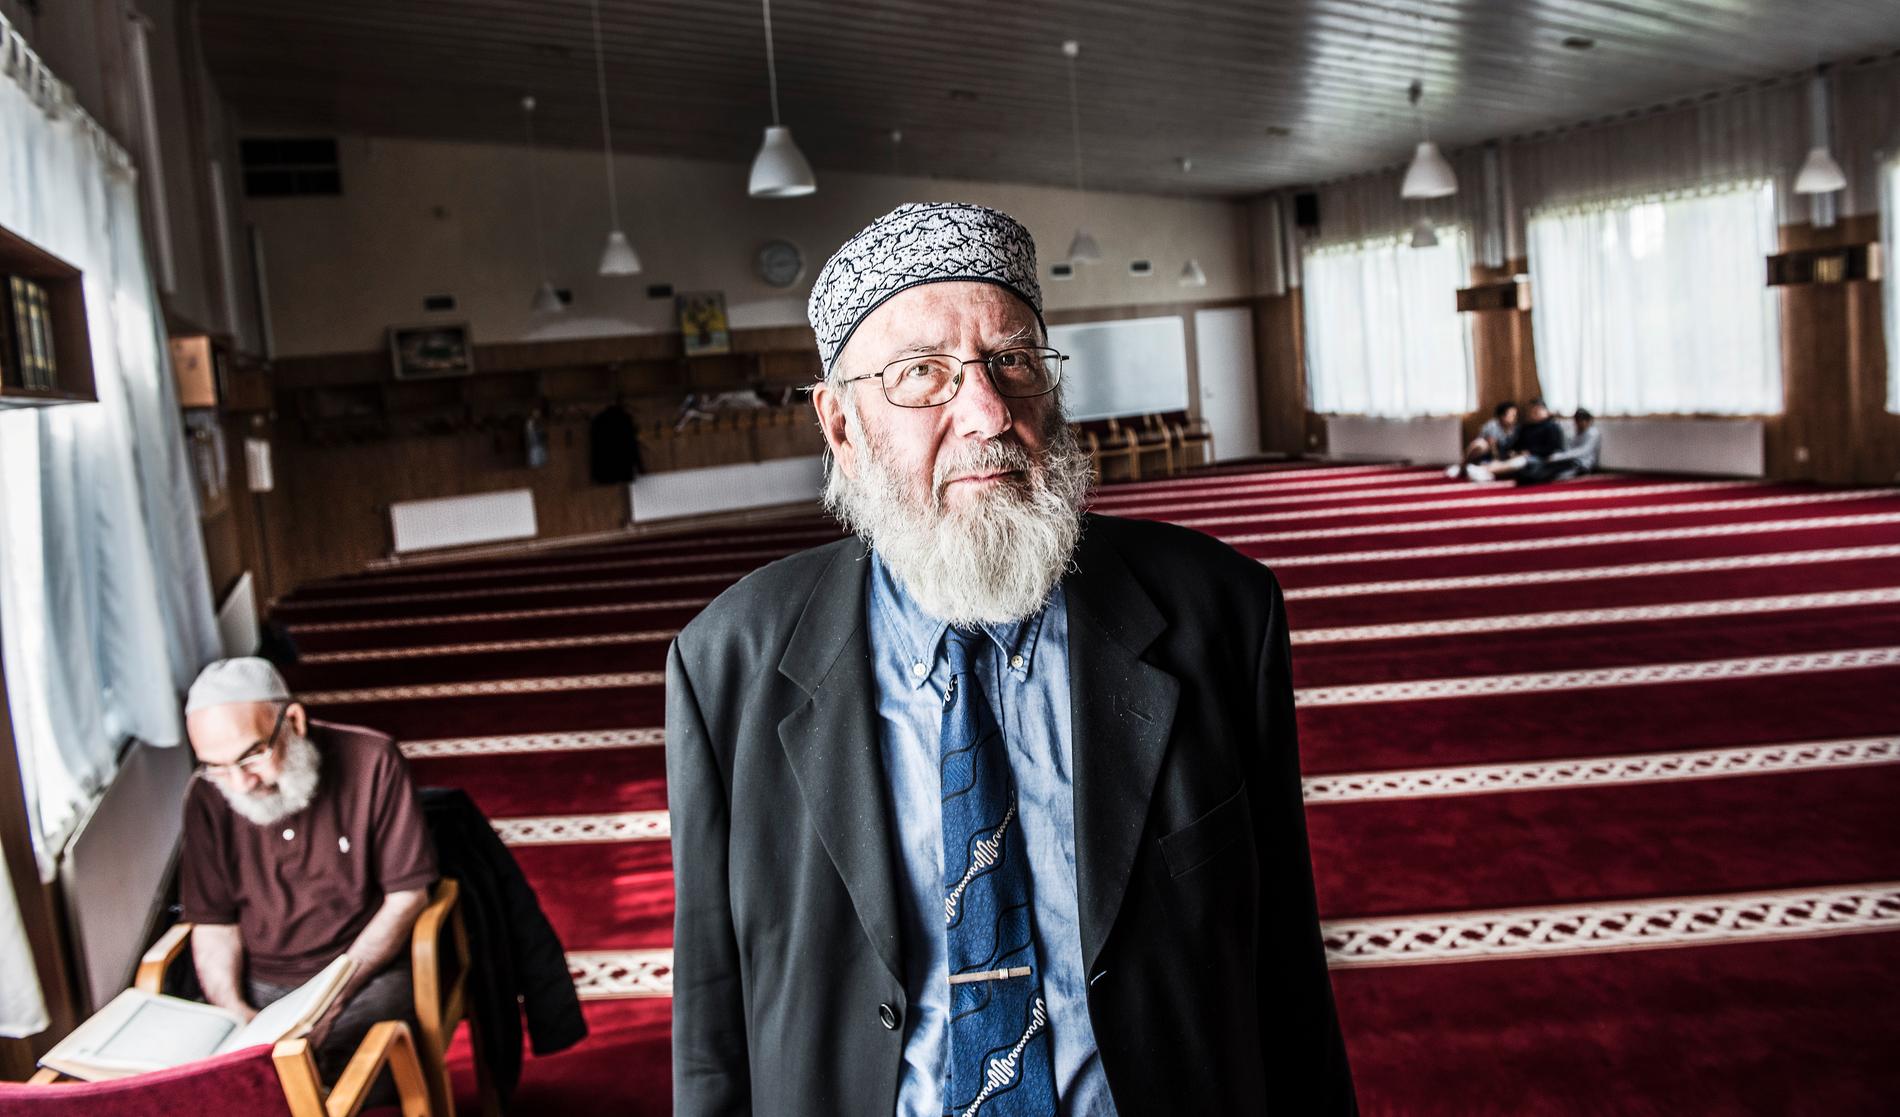 De förvarstagna imamerna släpps fria trots att de pekats ut som säkerhetshot. Imamen Abd al Haqq Kielan i Eskilstuna, som länge kämpat mot extremism, befarar att radikaliseringen kan öka. Arkivbild.